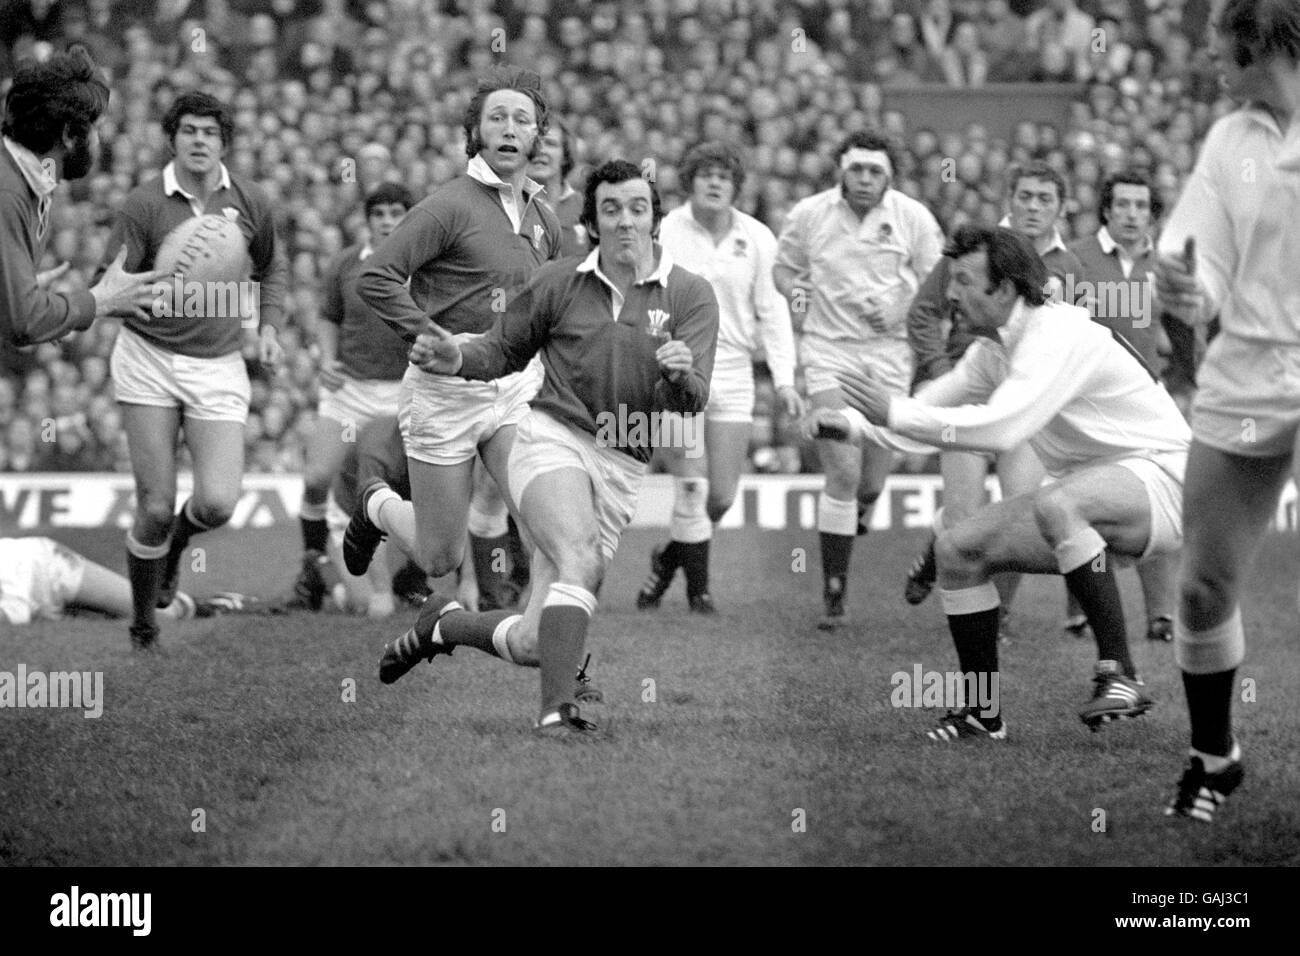 Rugby Union - Five Nations Championship - England gegen Wales. Phil Bennett aus Wales (c, r) gibt den Ball an den Flügel, beobachtet von Teamkollege JPR Williams (c, l) Stockfoto